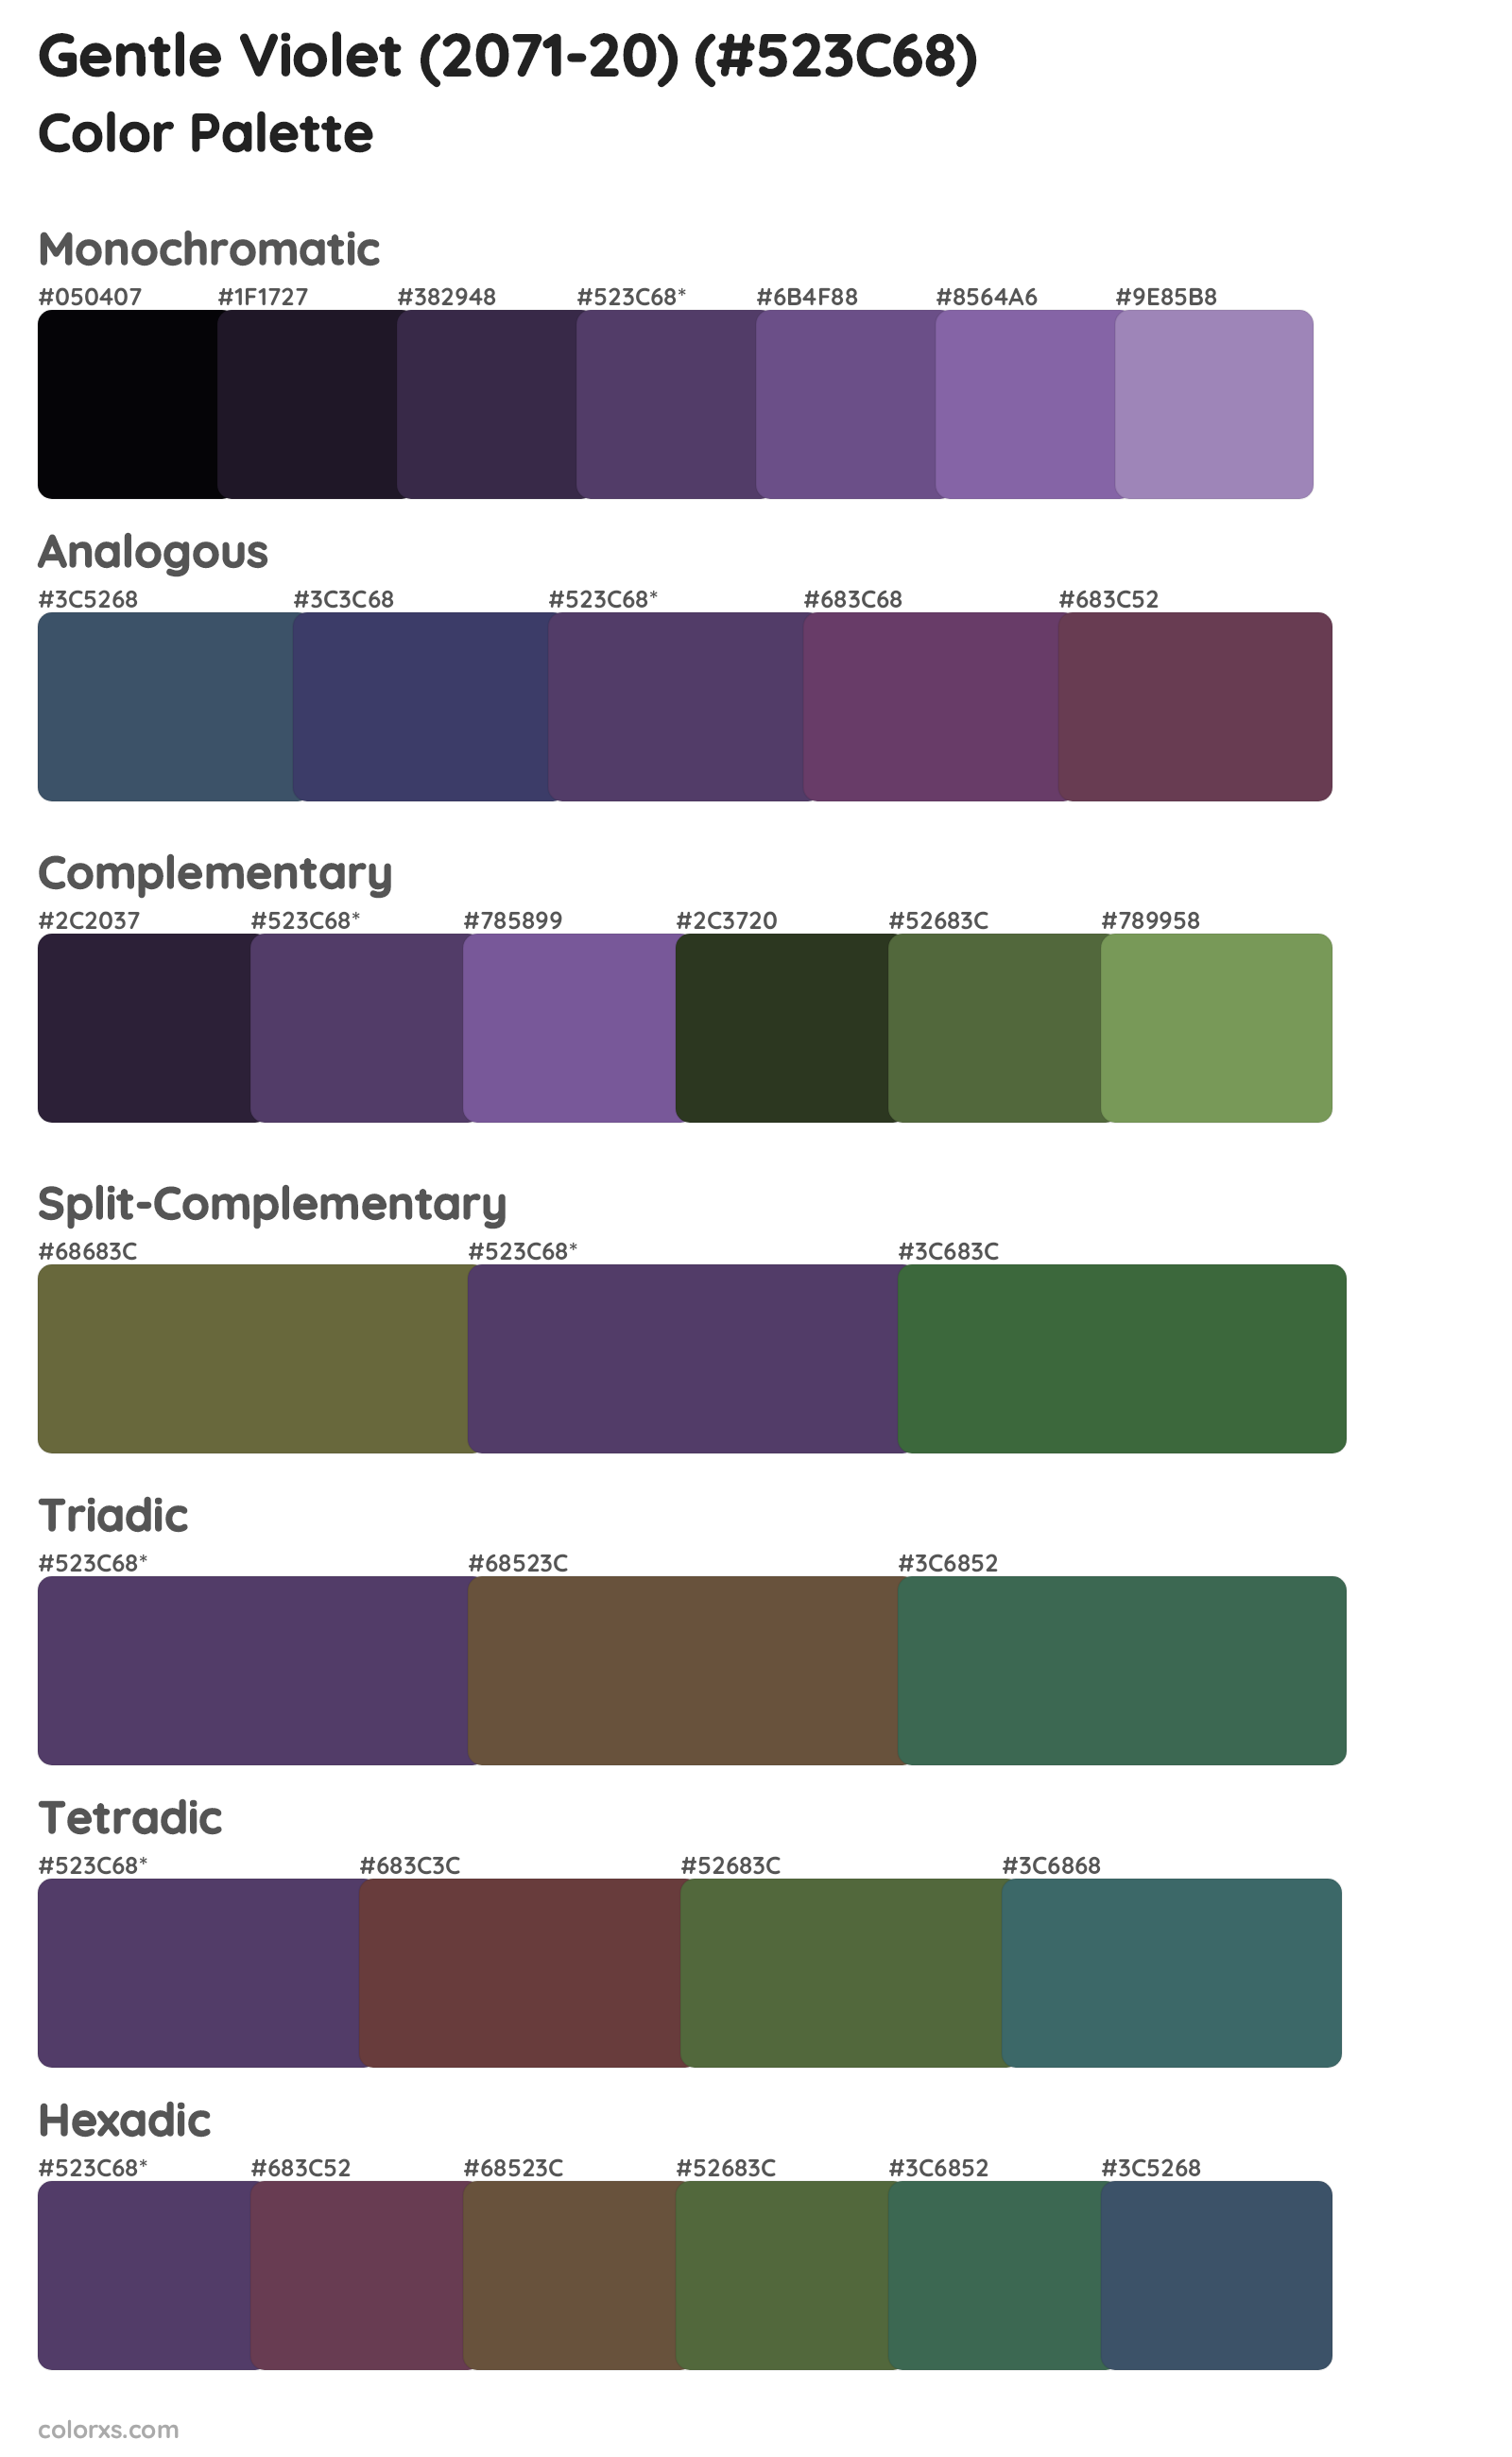 Gentle Violet (2071-20) Color Scheme Palettes